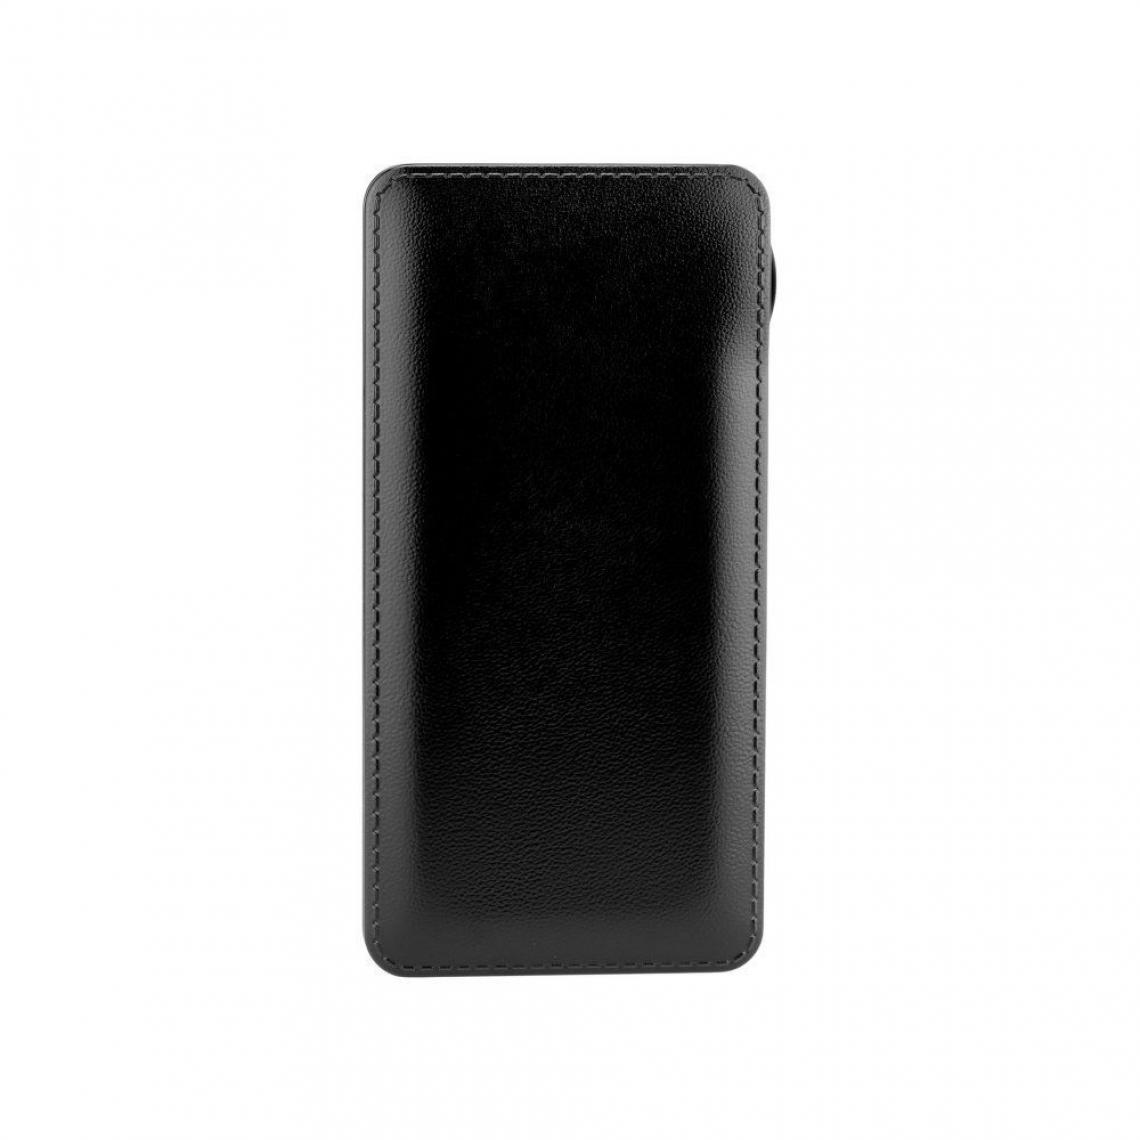 Ozzzo - Chargeur batterie externe 10000mAh powerbank ozzzo noir pour TCL Tab 10S - Autres accessoires smartphone